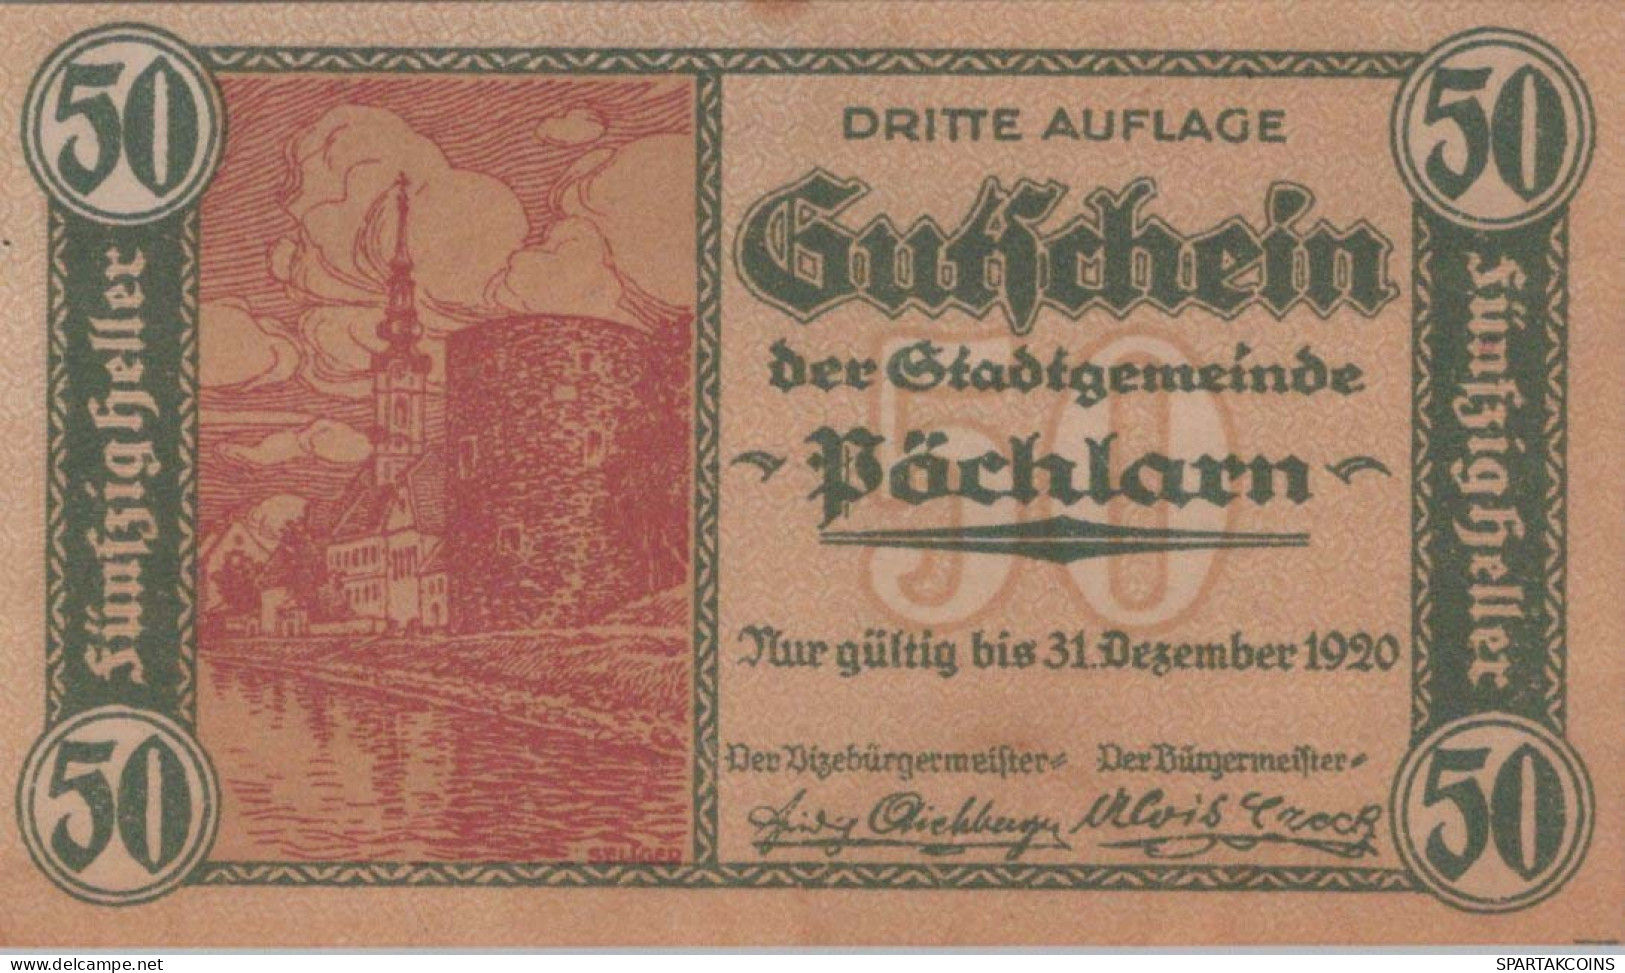 50 HELLER 1920 Stadt PoCHLARN Niedrigeren Österreich Notgeld Banknote #PE326 - [11] Emissioni Locali